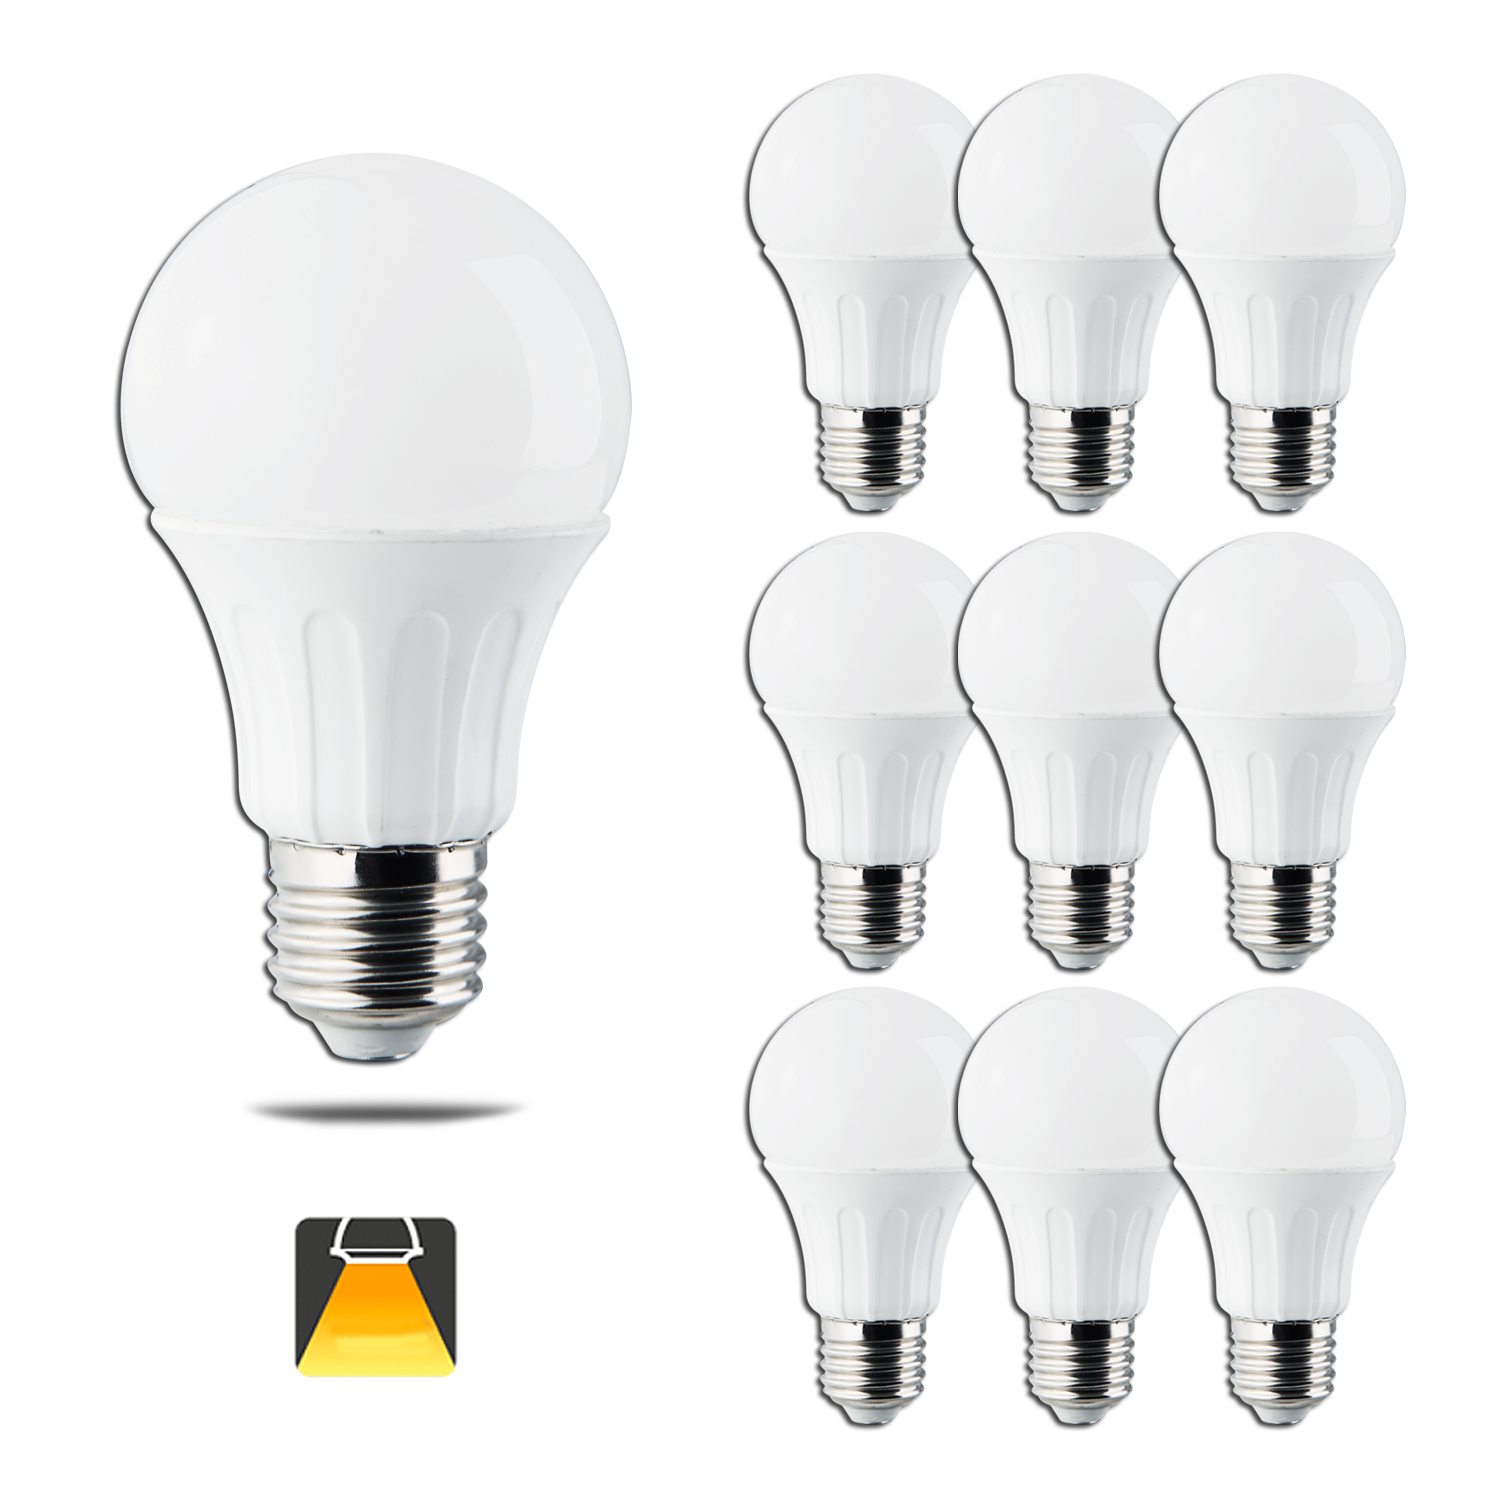 Aigostar - Confezione da 10 Lampadine LED A5 A60B, 12W, Attacco Piccolo E27, 984 lumen, Luce Calda 3000K [Classe di efficienza energetica A+]